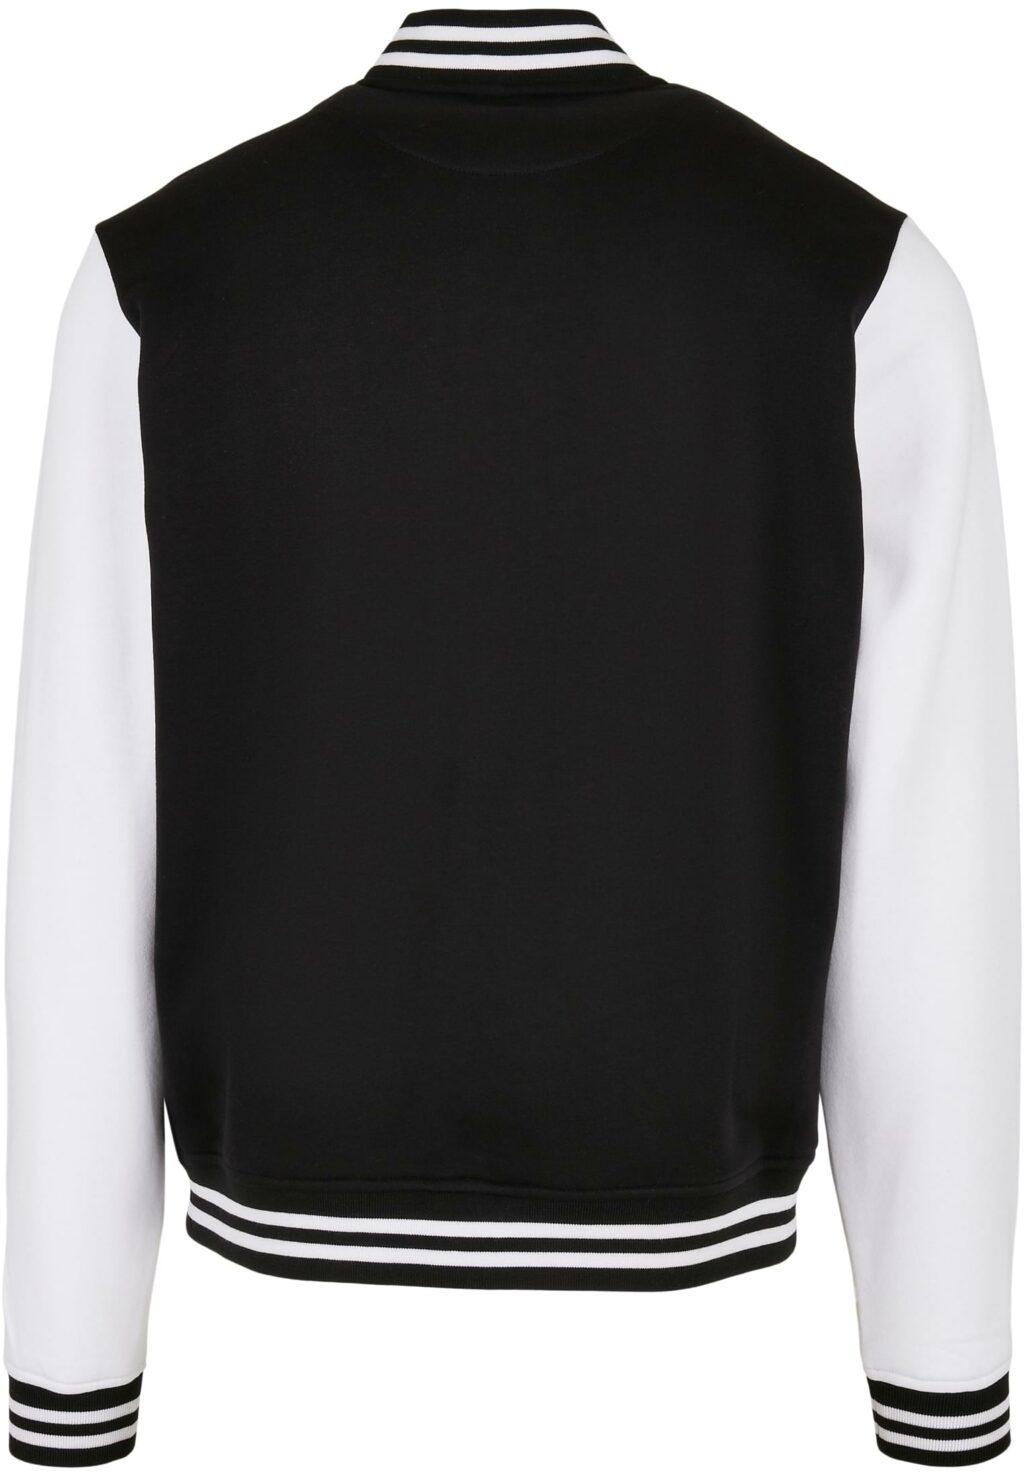 Starter College Fleece Jacket black/white ST107